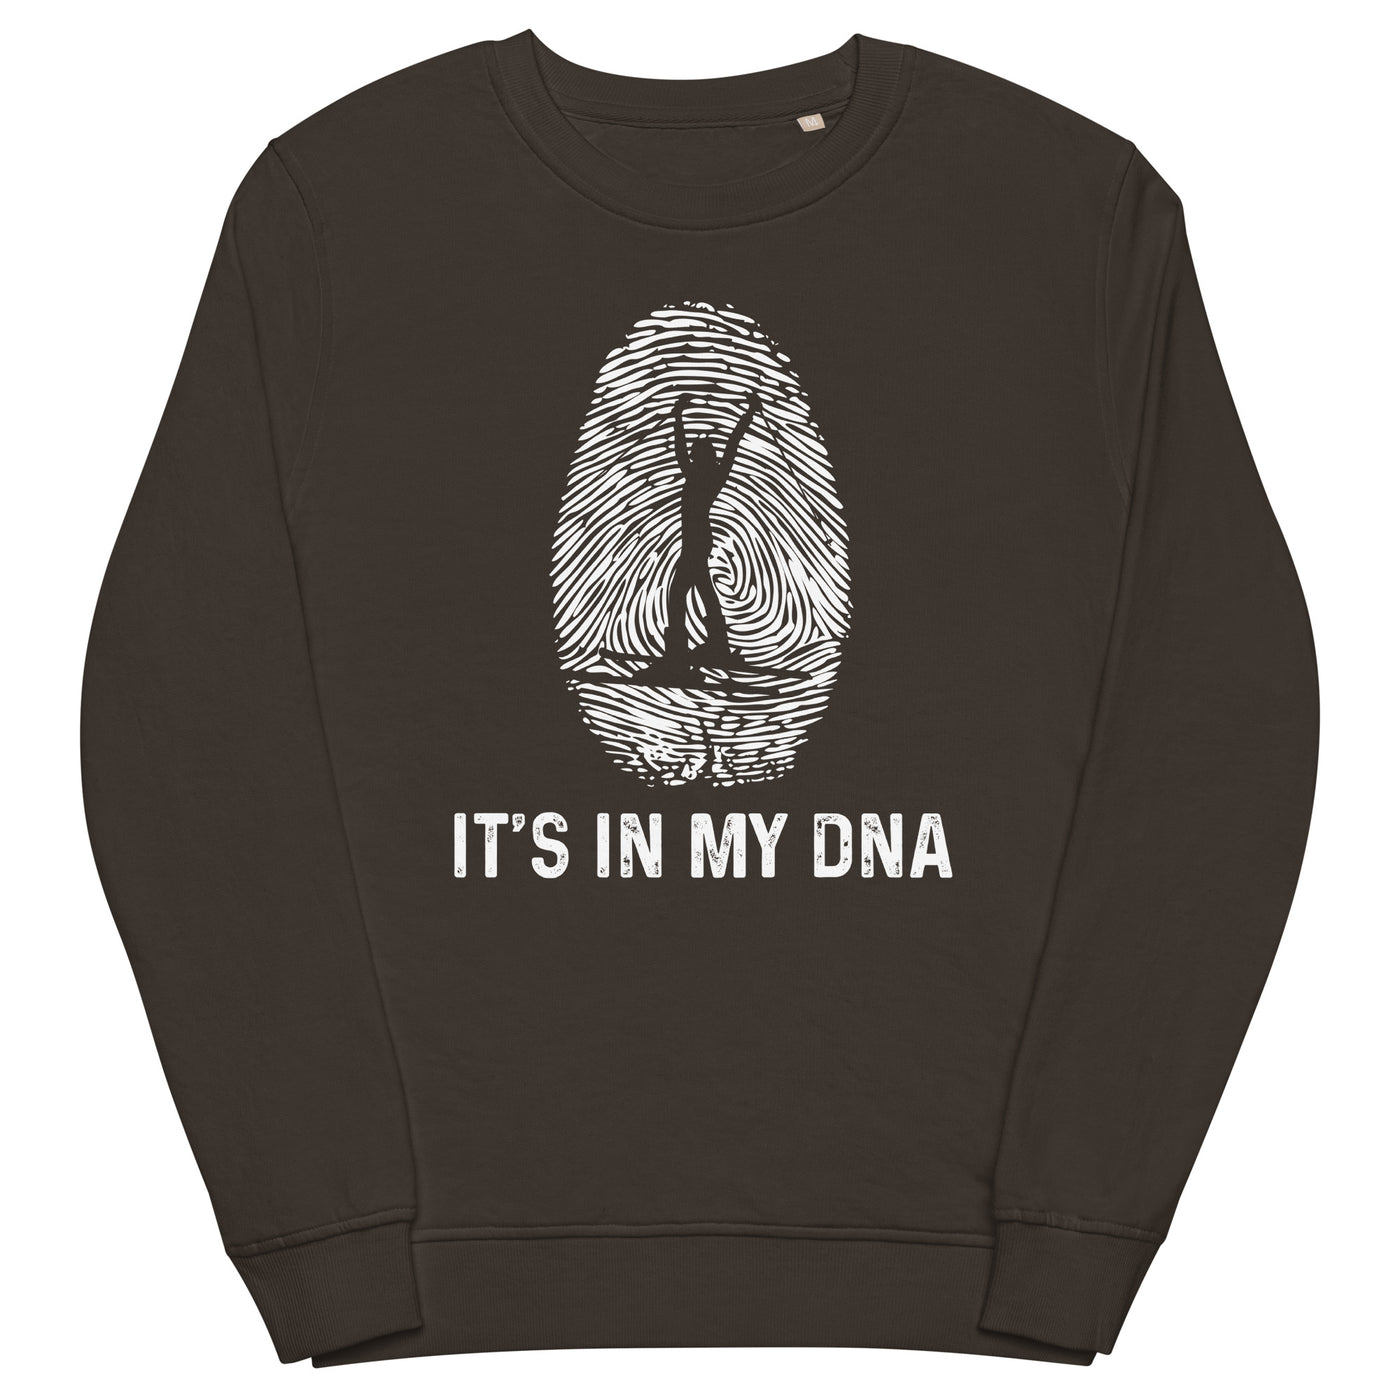 It's In My DNA 1 - Unisex Premium Organic Sweatshirt klettern ski xxx yyy zzz Deep Charcoal Grey